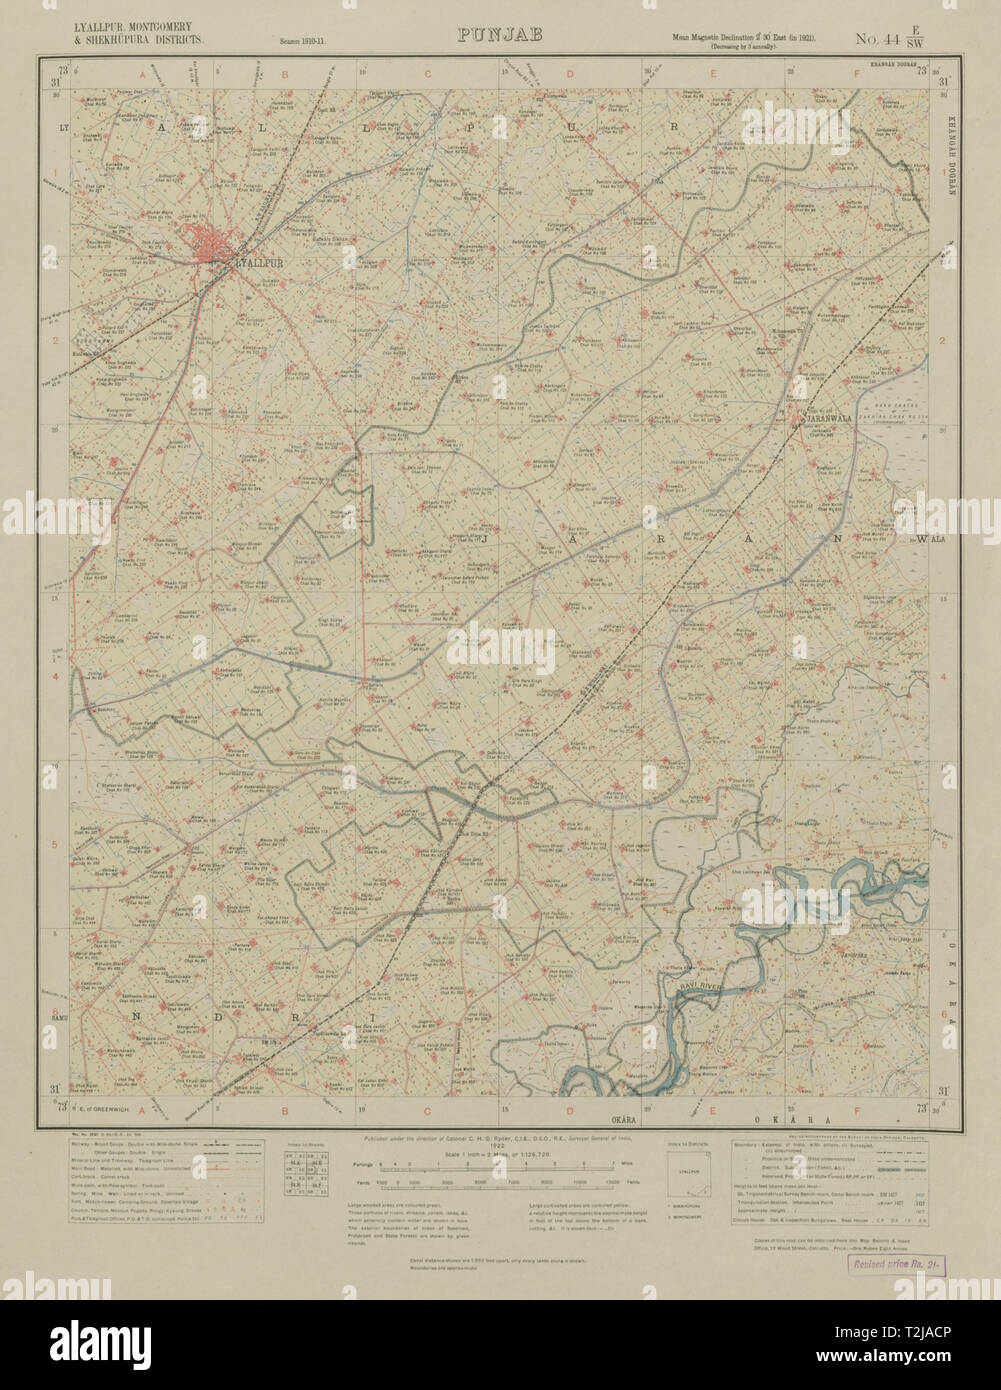 SURVEY OF INDIA 44 E/SW Pakistan Punjab Faisalabad (Lyallpur) Jaranwala 1922 map Stock Photo